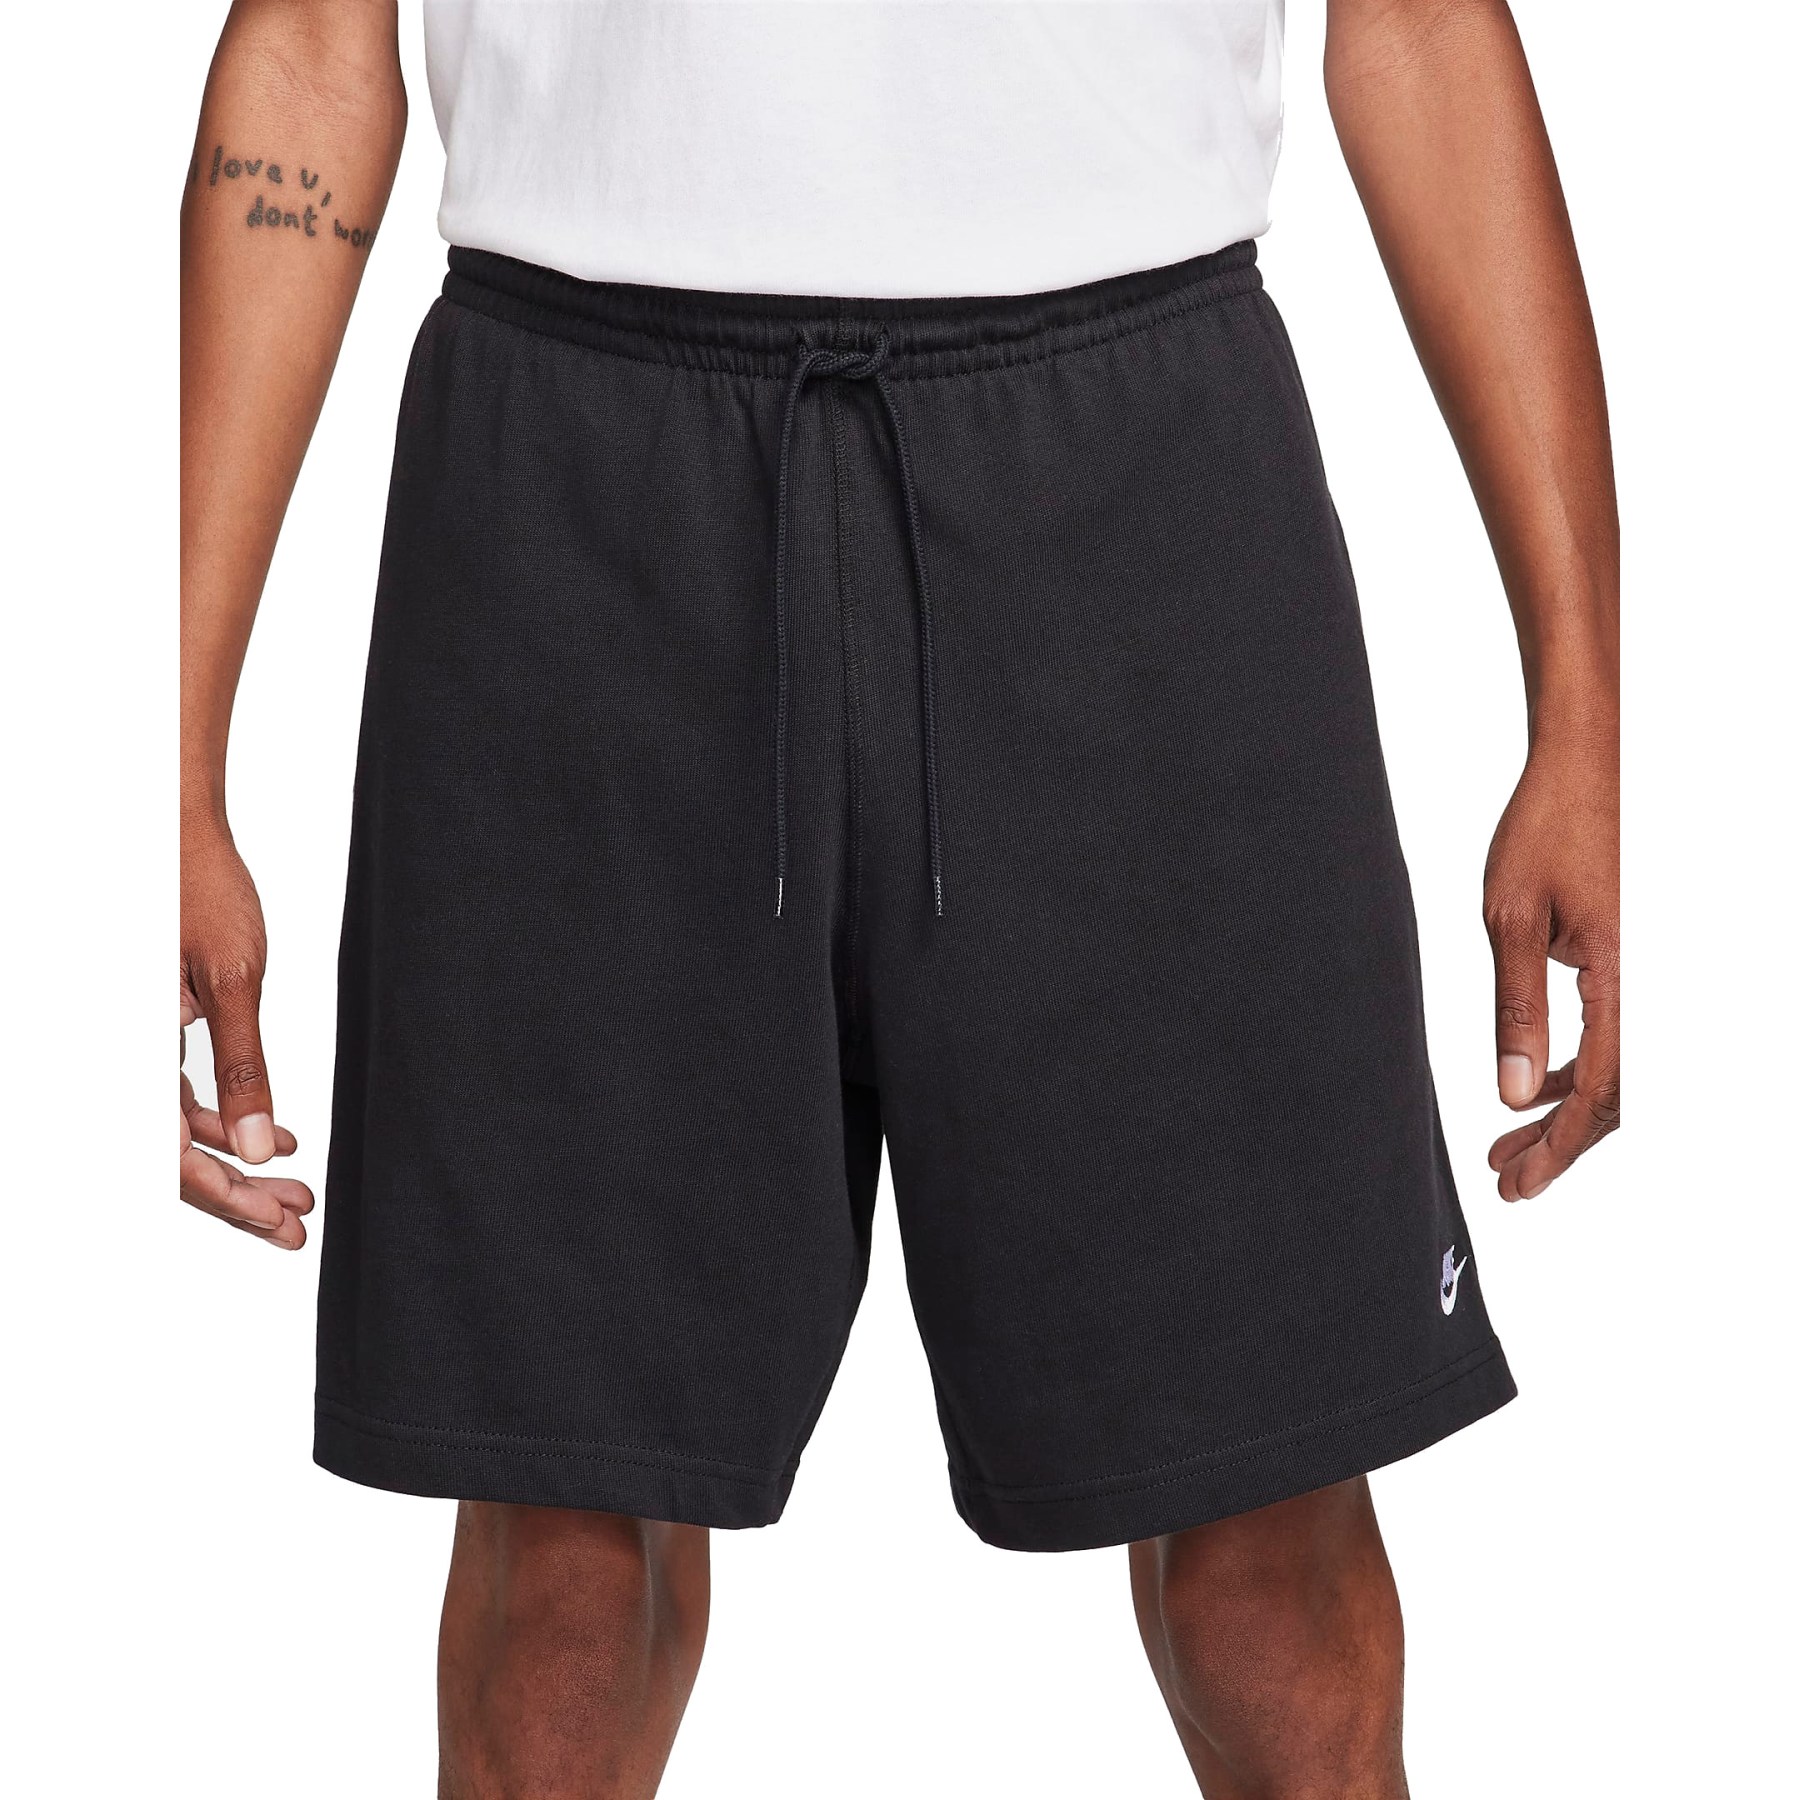 Produktbild von Nike Club Strick-Shorts Herren - schwarz/weiß FQ4359-010